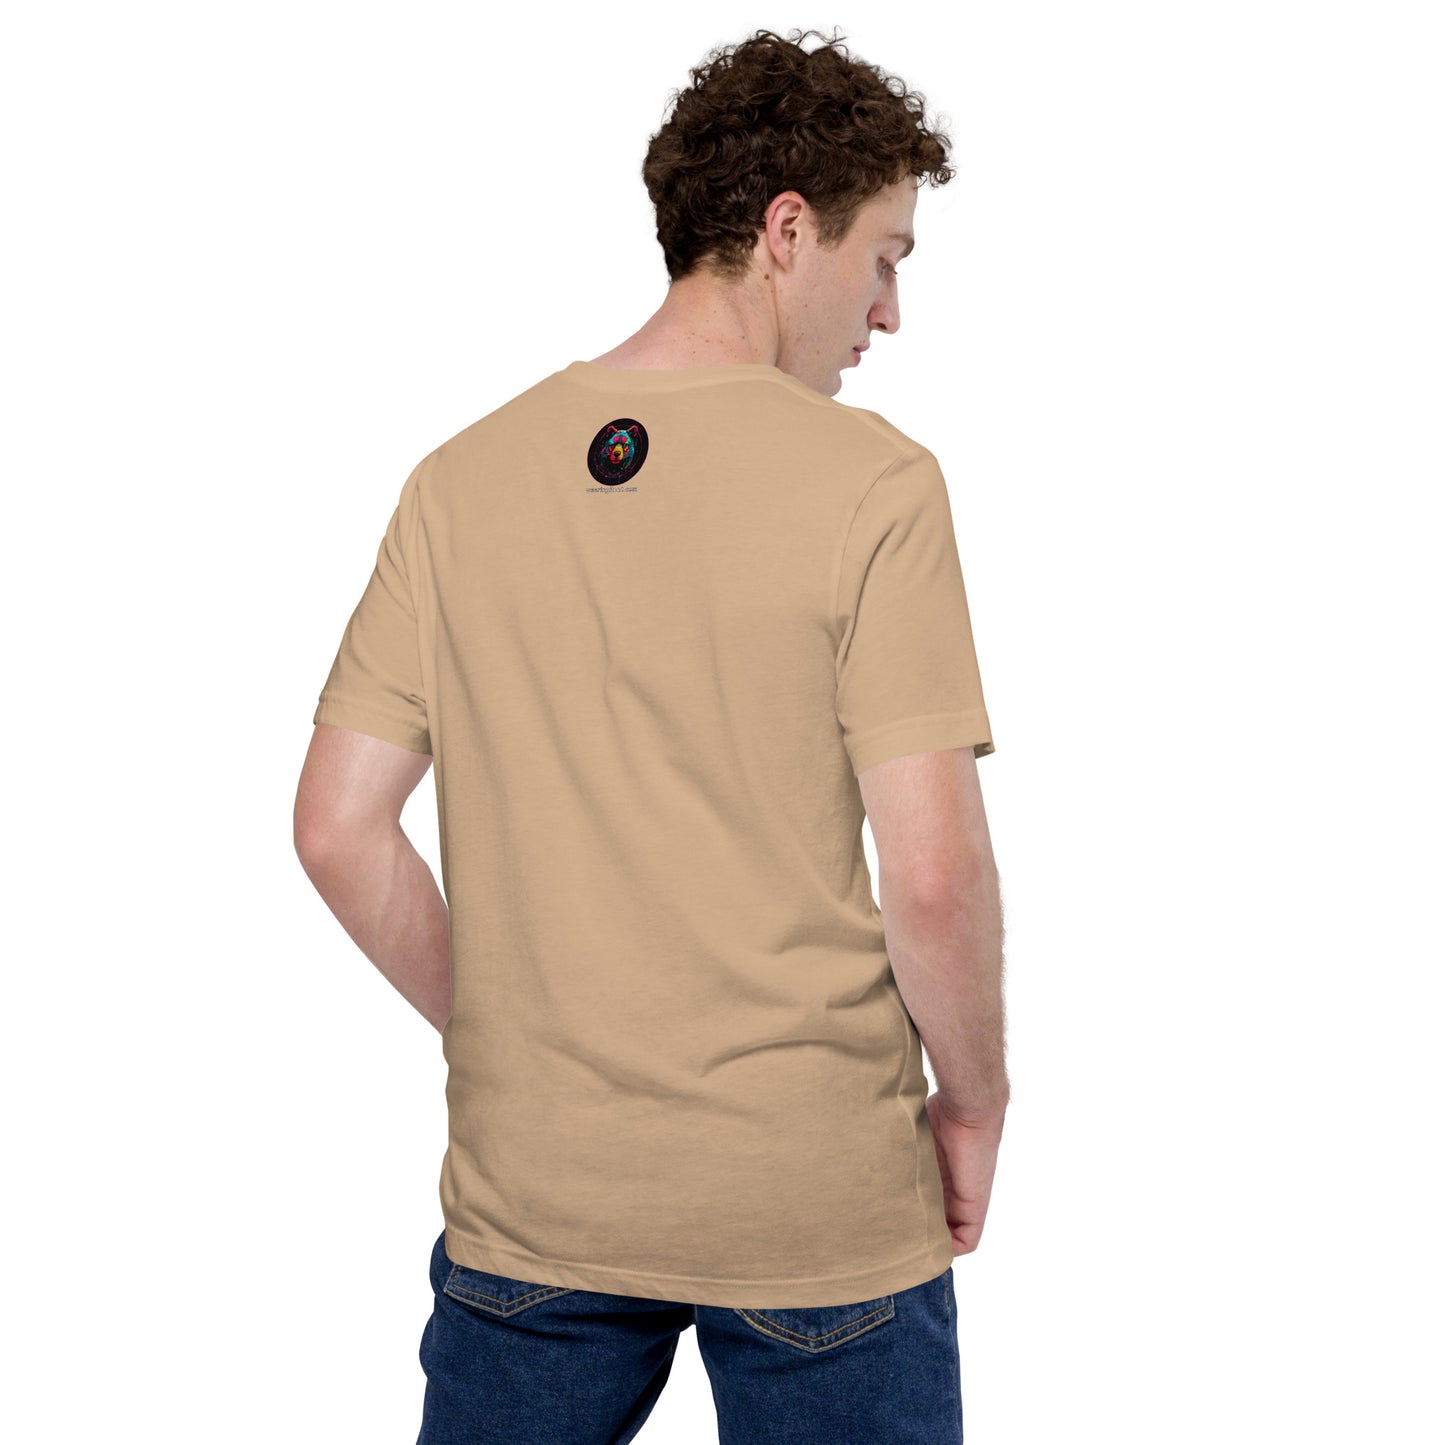 Cyberpunk Brown Bear Men's T-Shirt